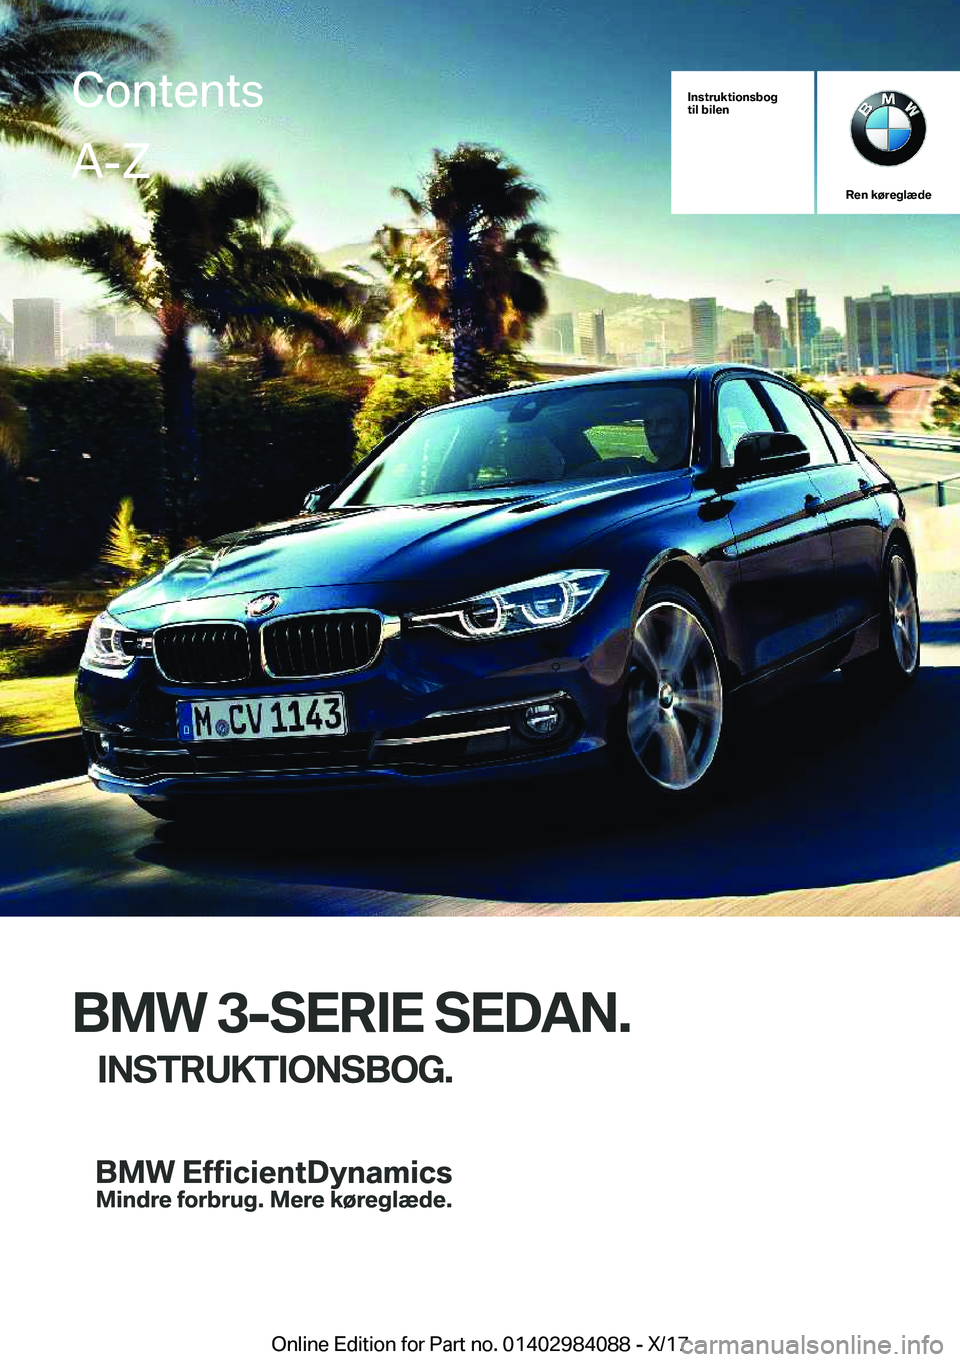 BMW 3 SERIES 2018  InstruktionsbØger (in Danish) �I�n�s�t�r�u�k�t�i�o�n�s�b�o�g
�t�i�l��b�i�l�e�n
�R�e�n��k�